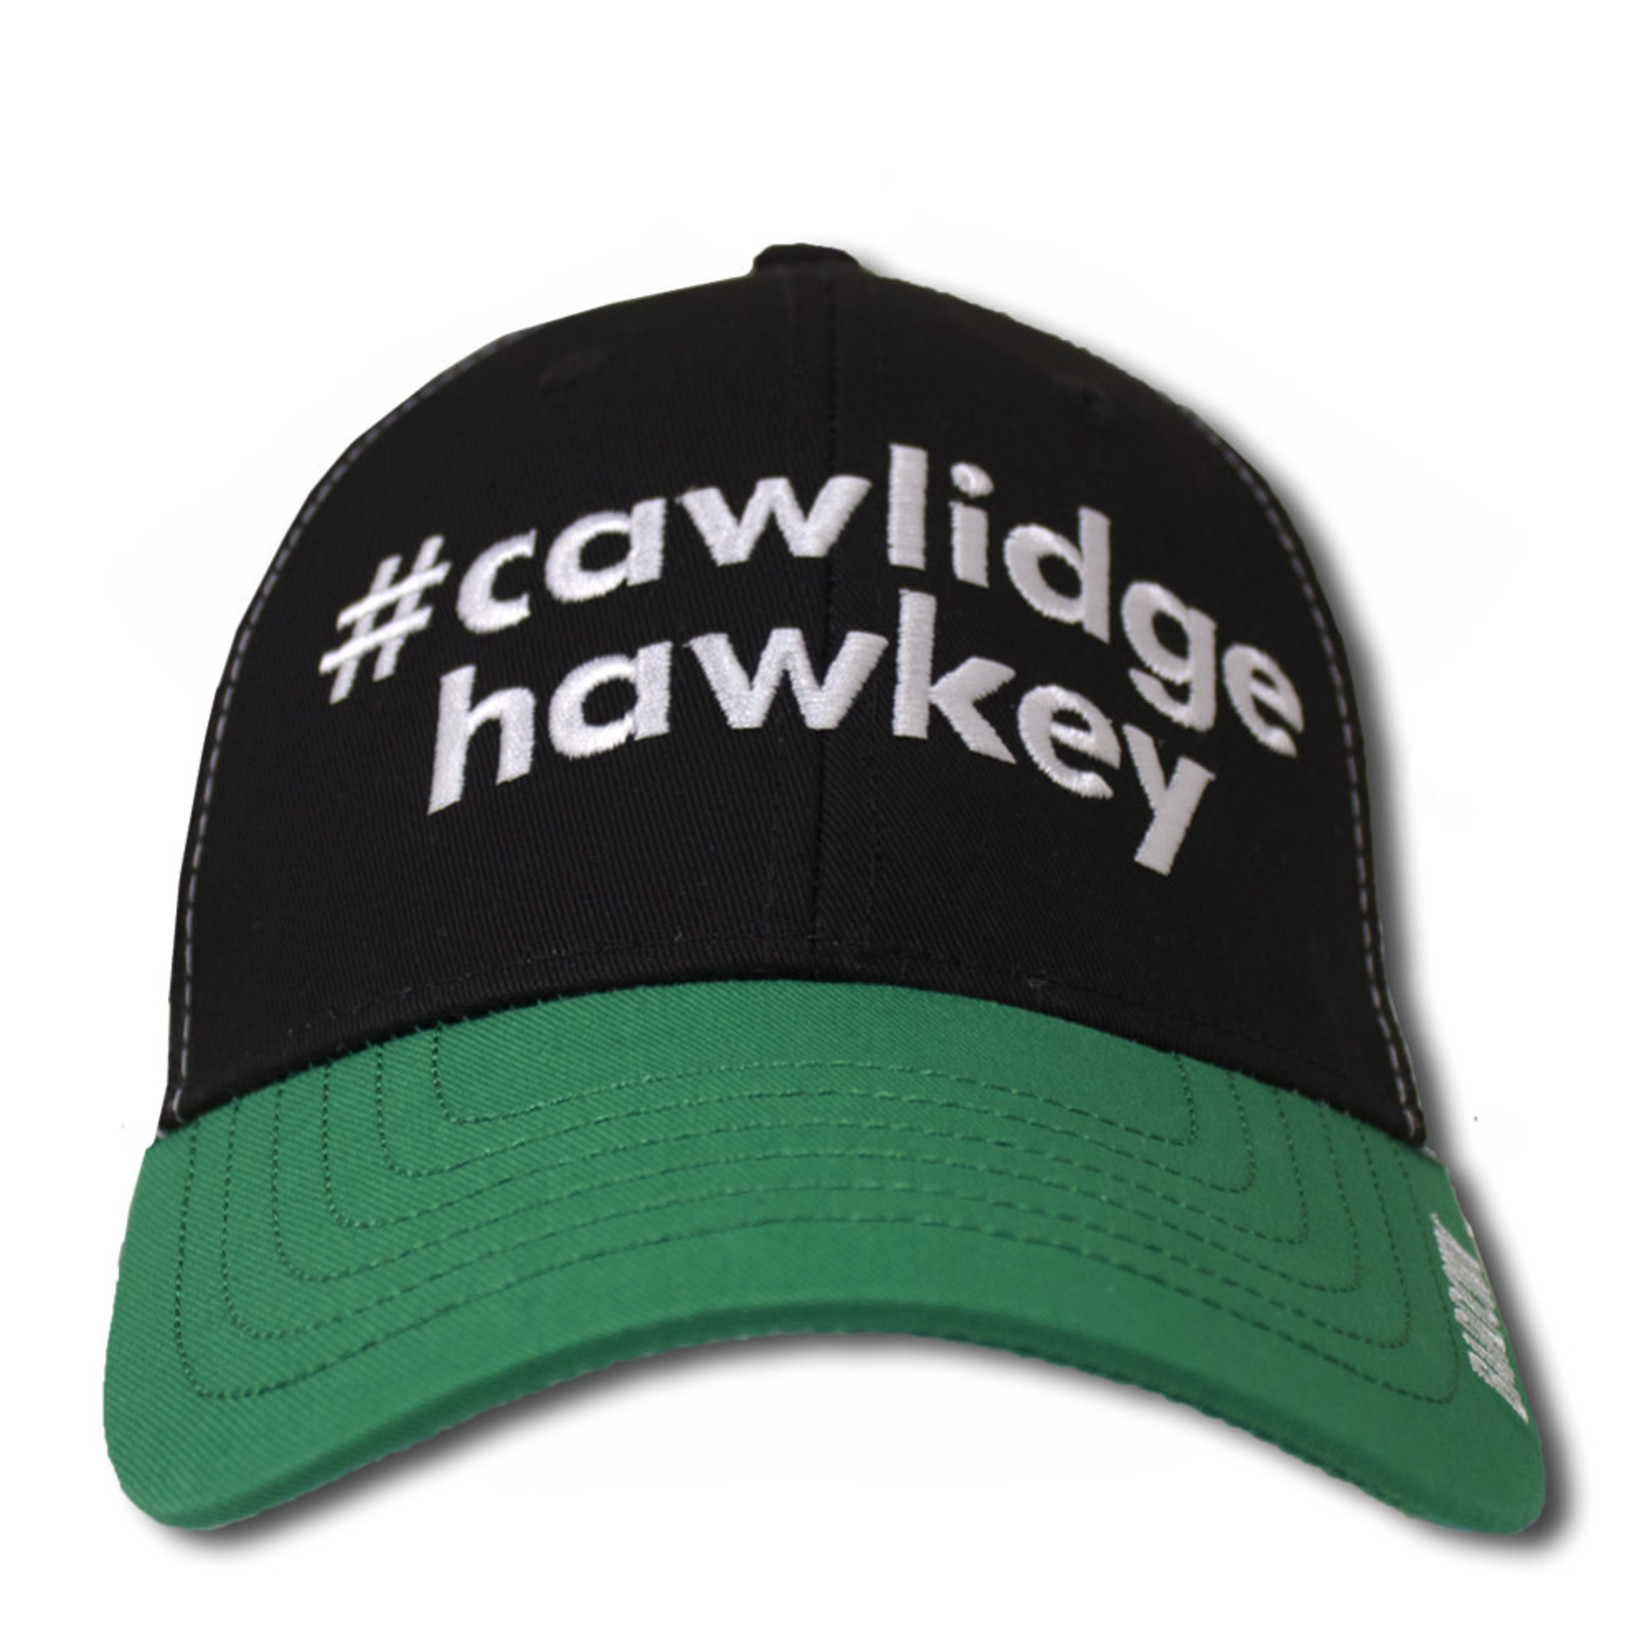 Bardown Hockey #Cawlidge Hawkey Hat